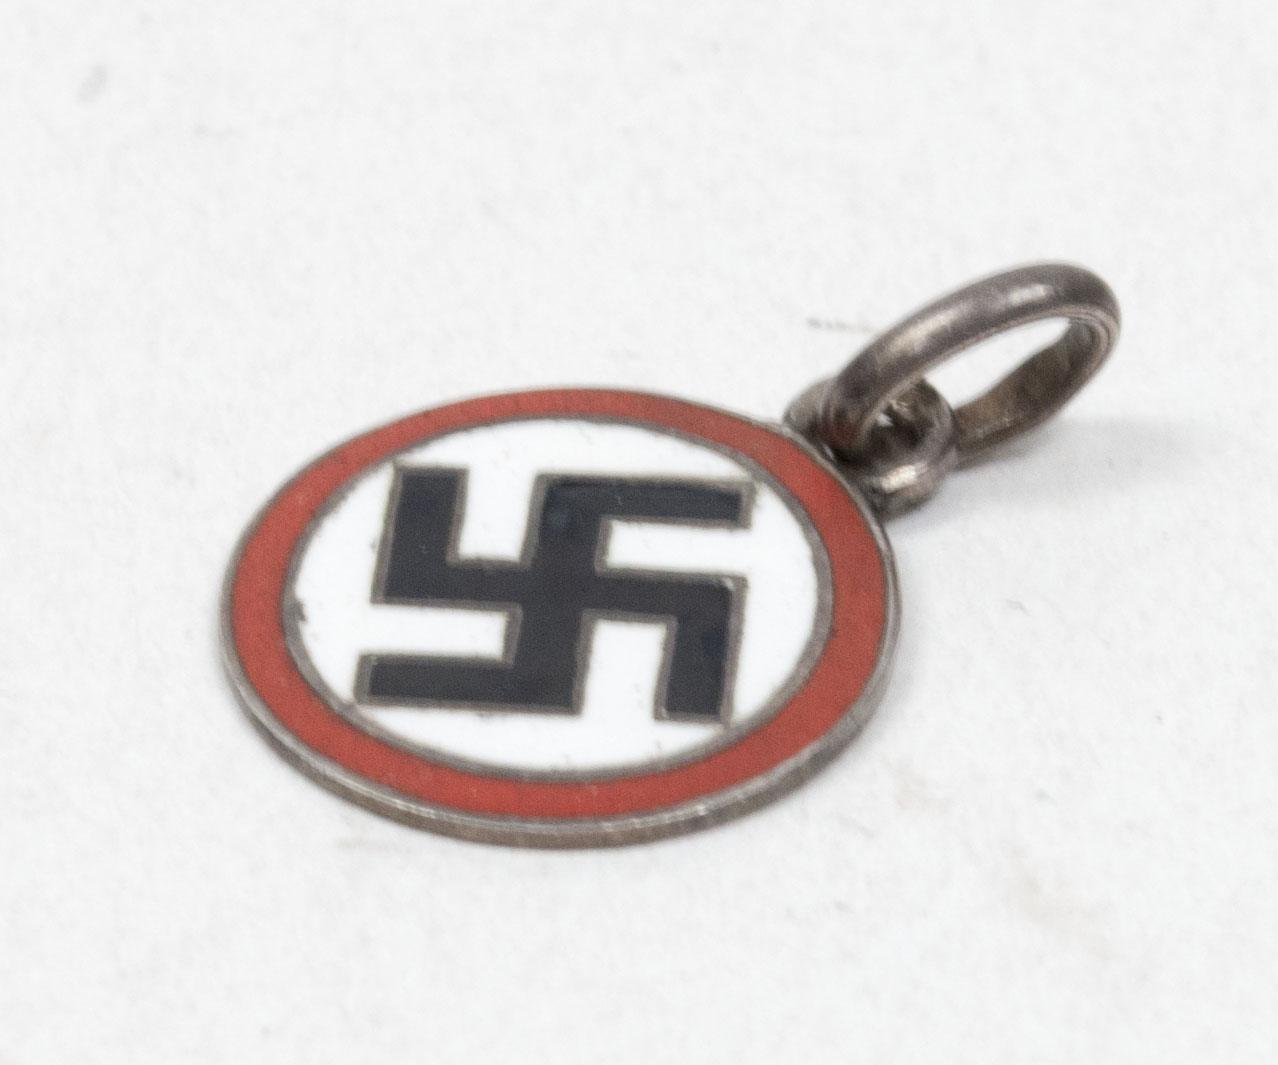 NSDAP Sympathisers badgehanger for necklace